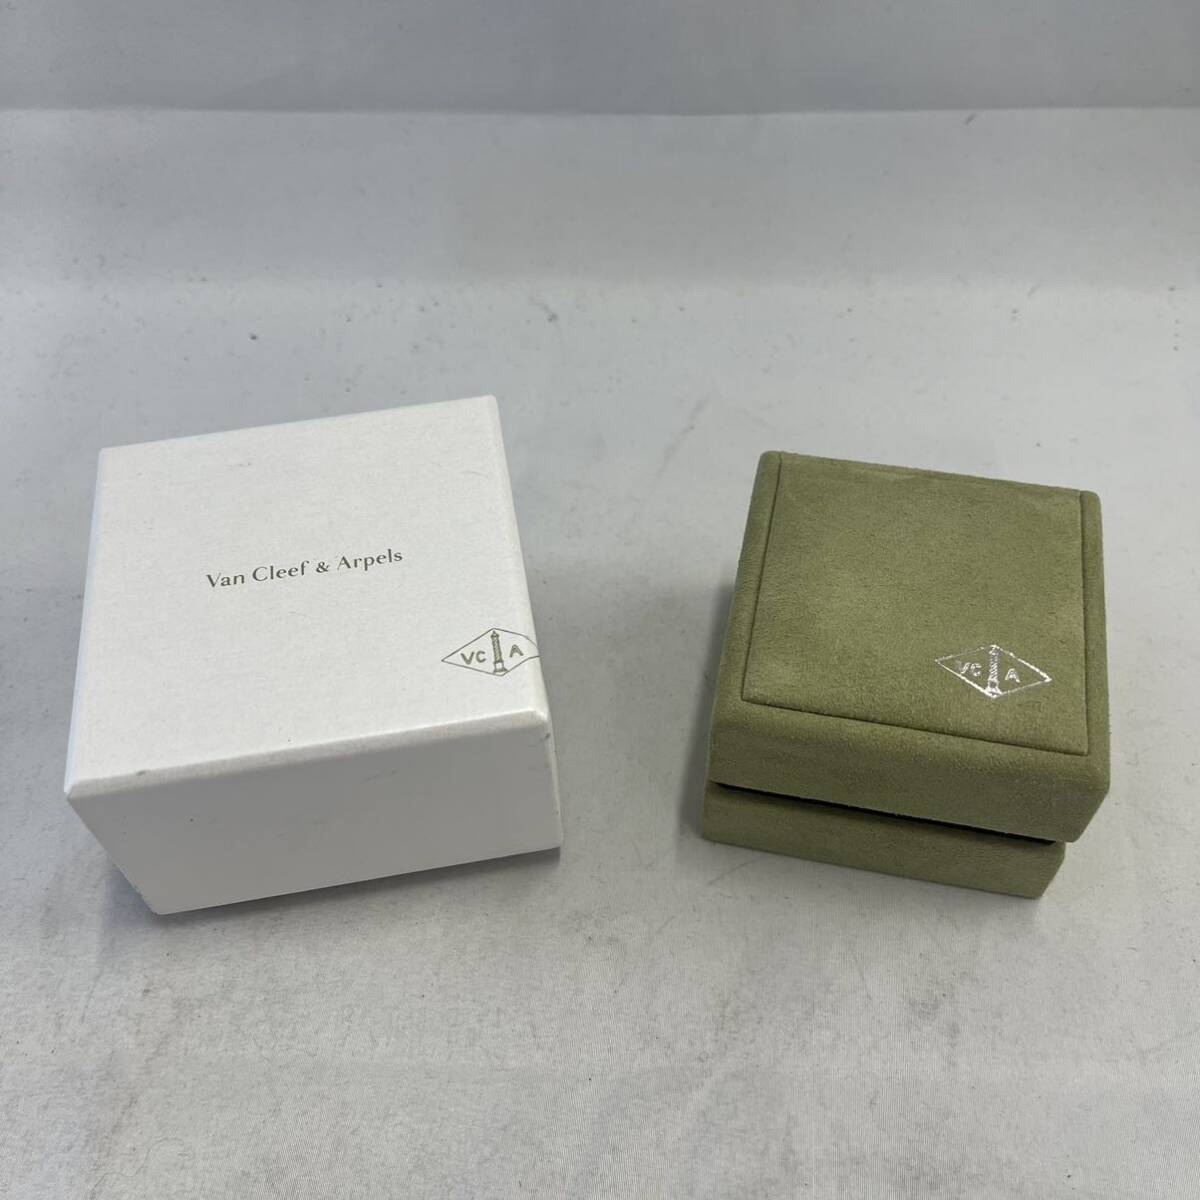 [Van Cleef&Arpels] Van kli кейс для украшений пустой коробка ювелирные изделия кейс кольцо ke- sling кейс 